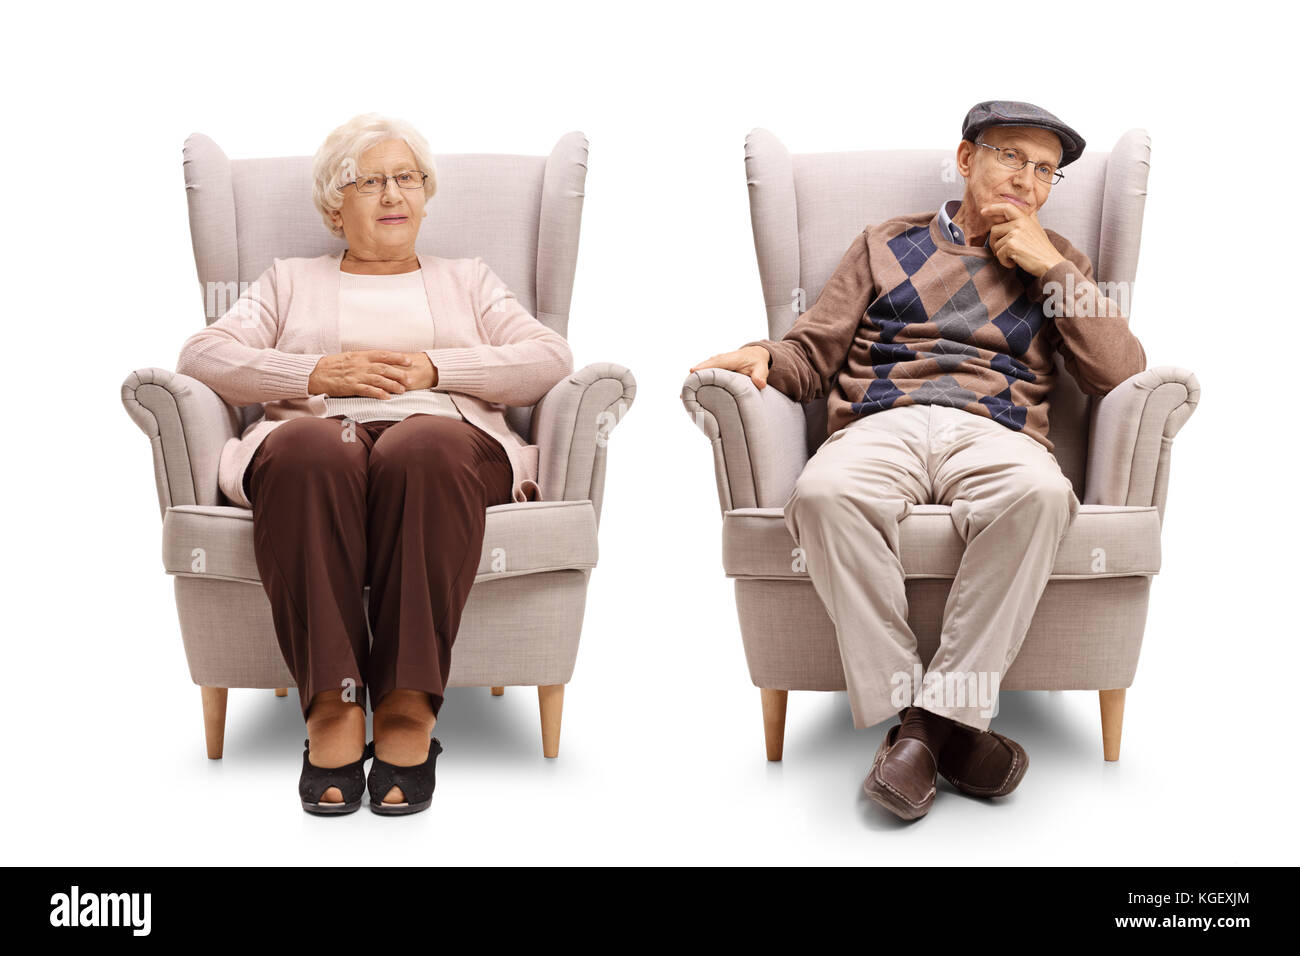 Uomo anziano e una donna anziana seduti in poltrona e guardando la telecamera isolata su sfondo bianco Foto Stock